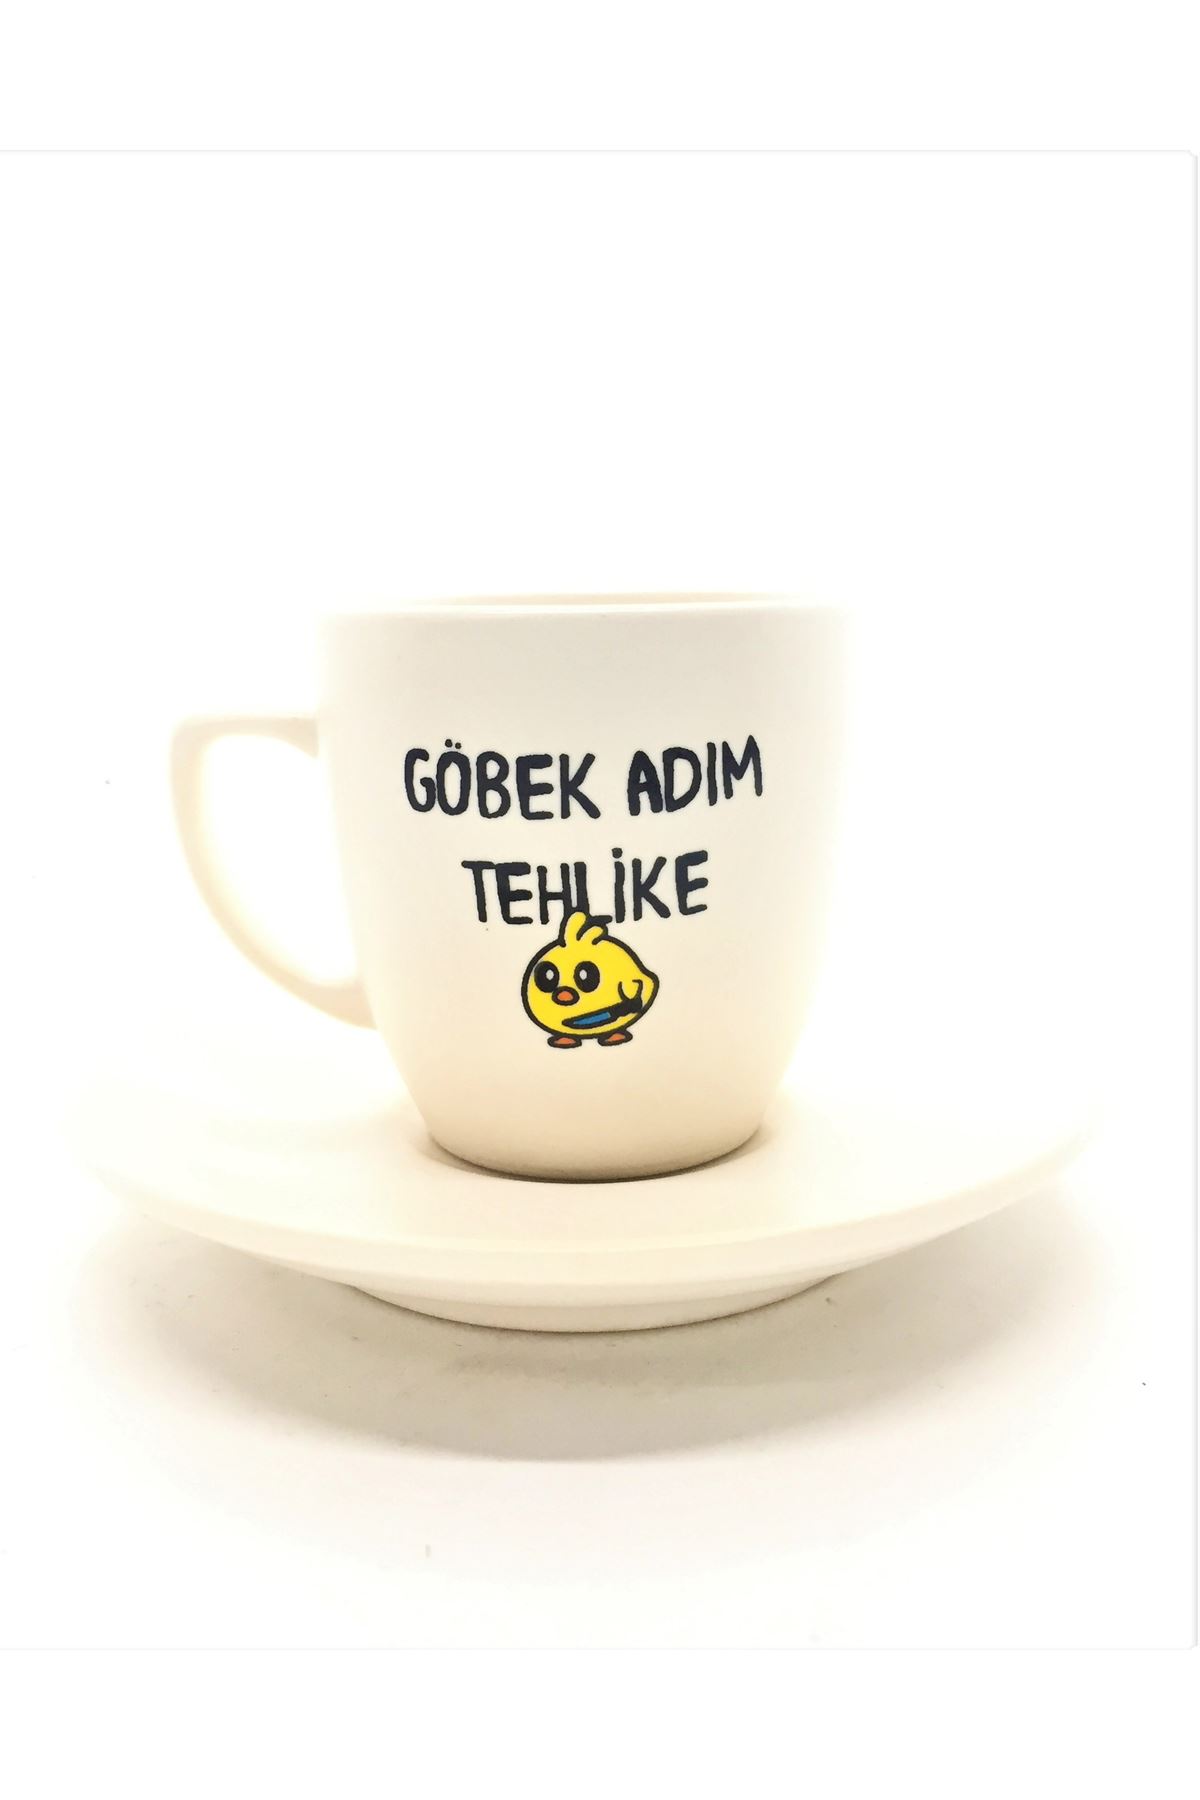 Göbek Adım Tehlike - Beyaz Türk Kahvesi Fincanı